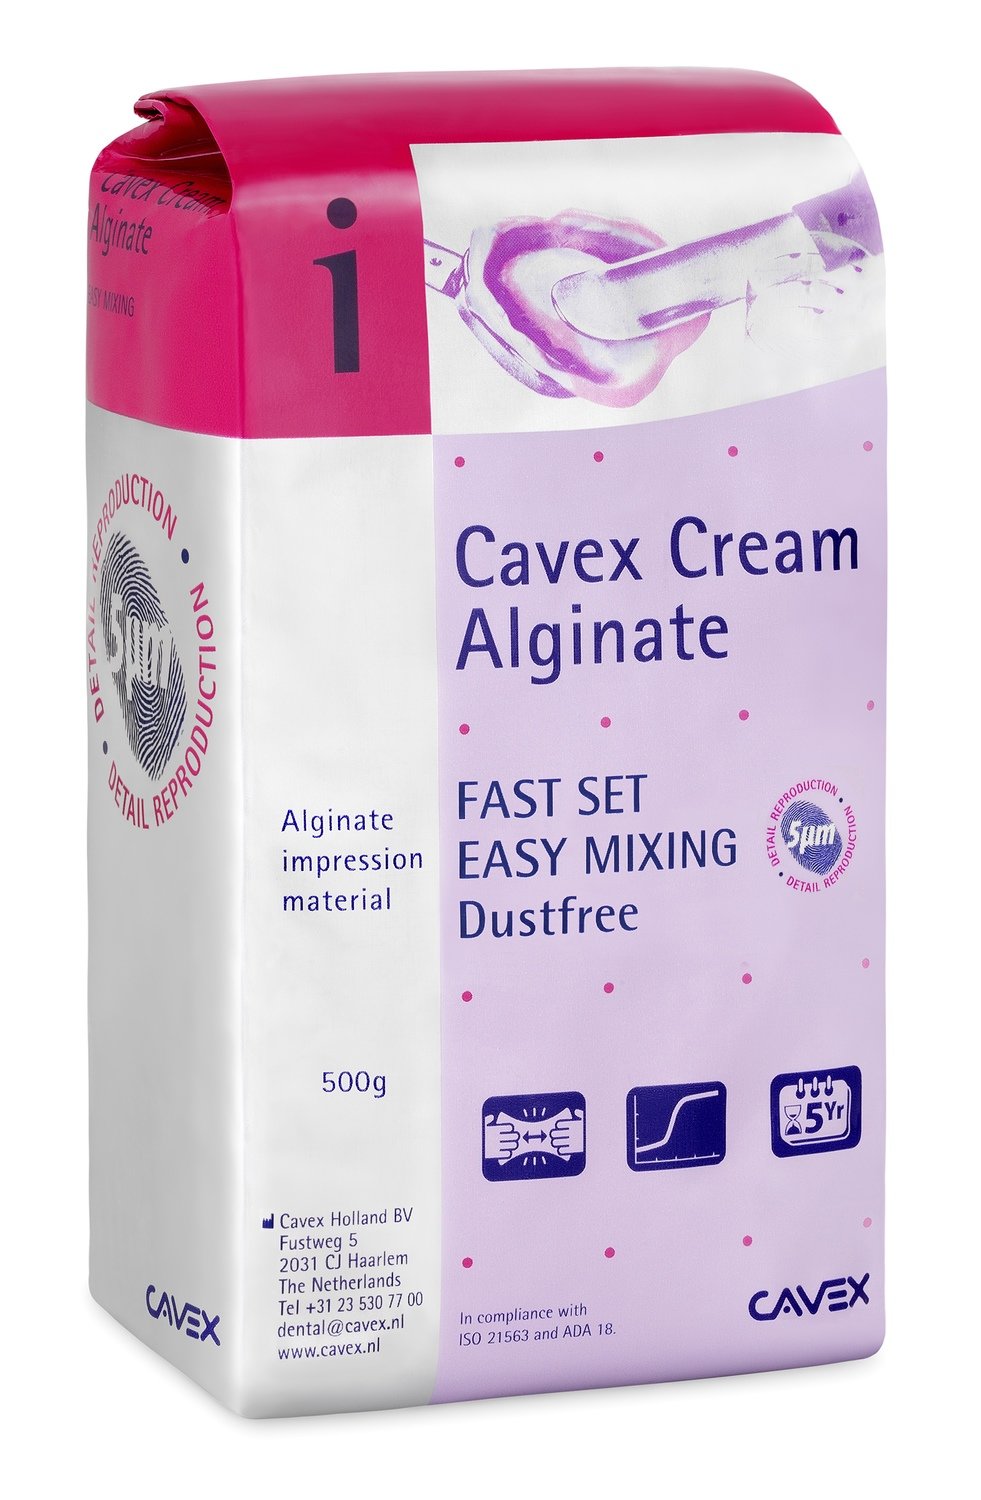 Cavex Cream